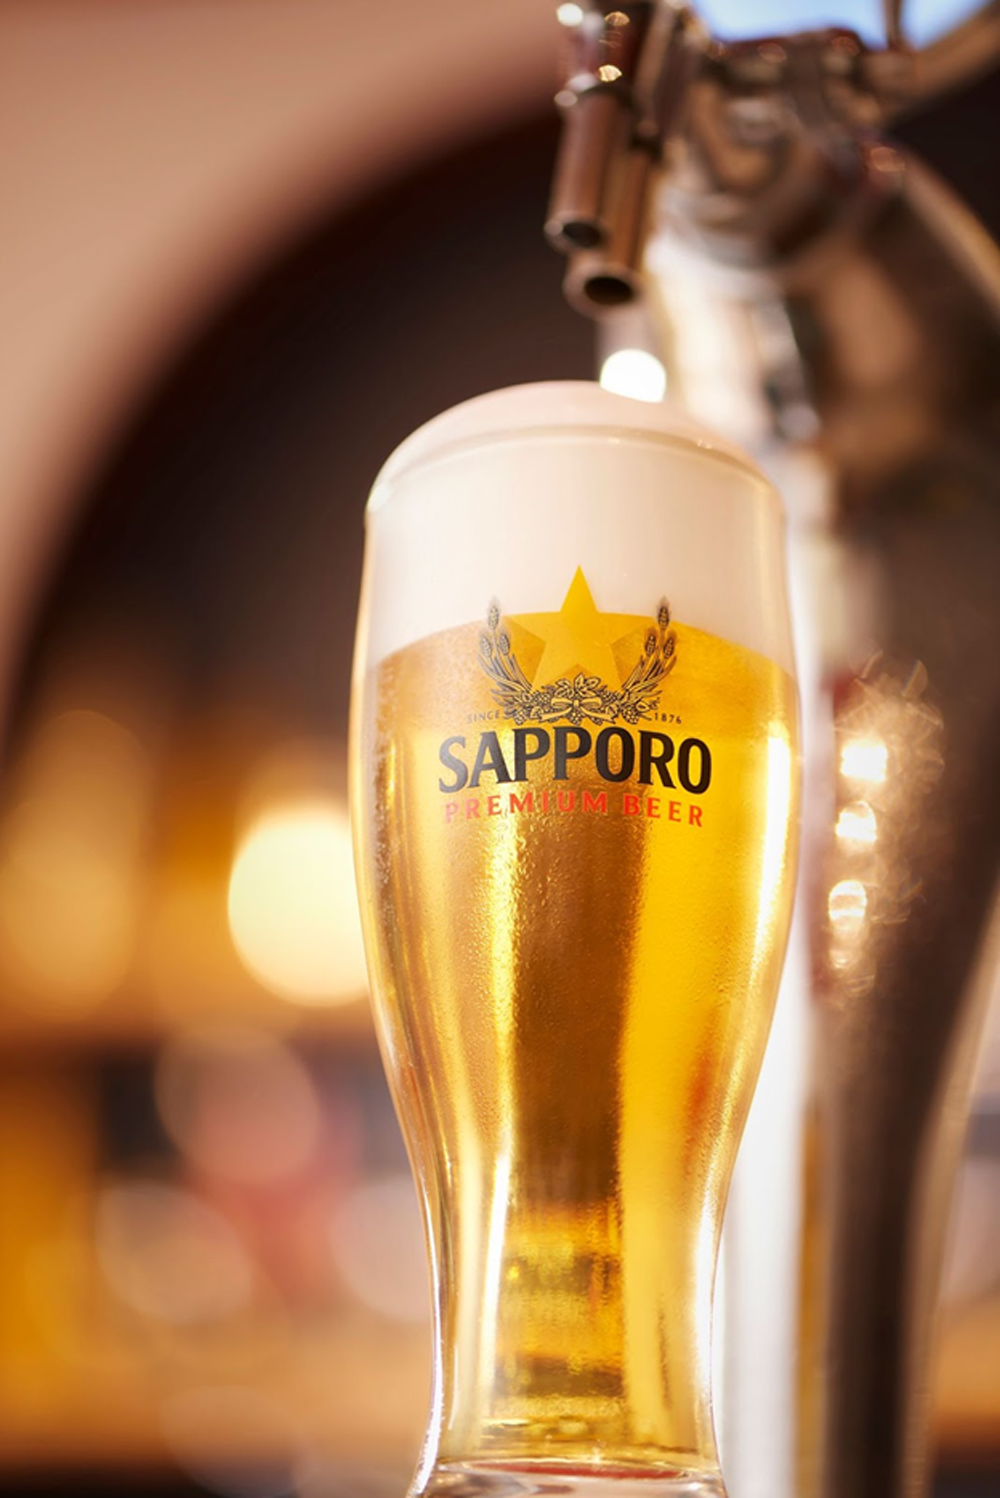   Một ly bia Sapporo Premium đồng hành cùng khoảnh khắc tận hưởng